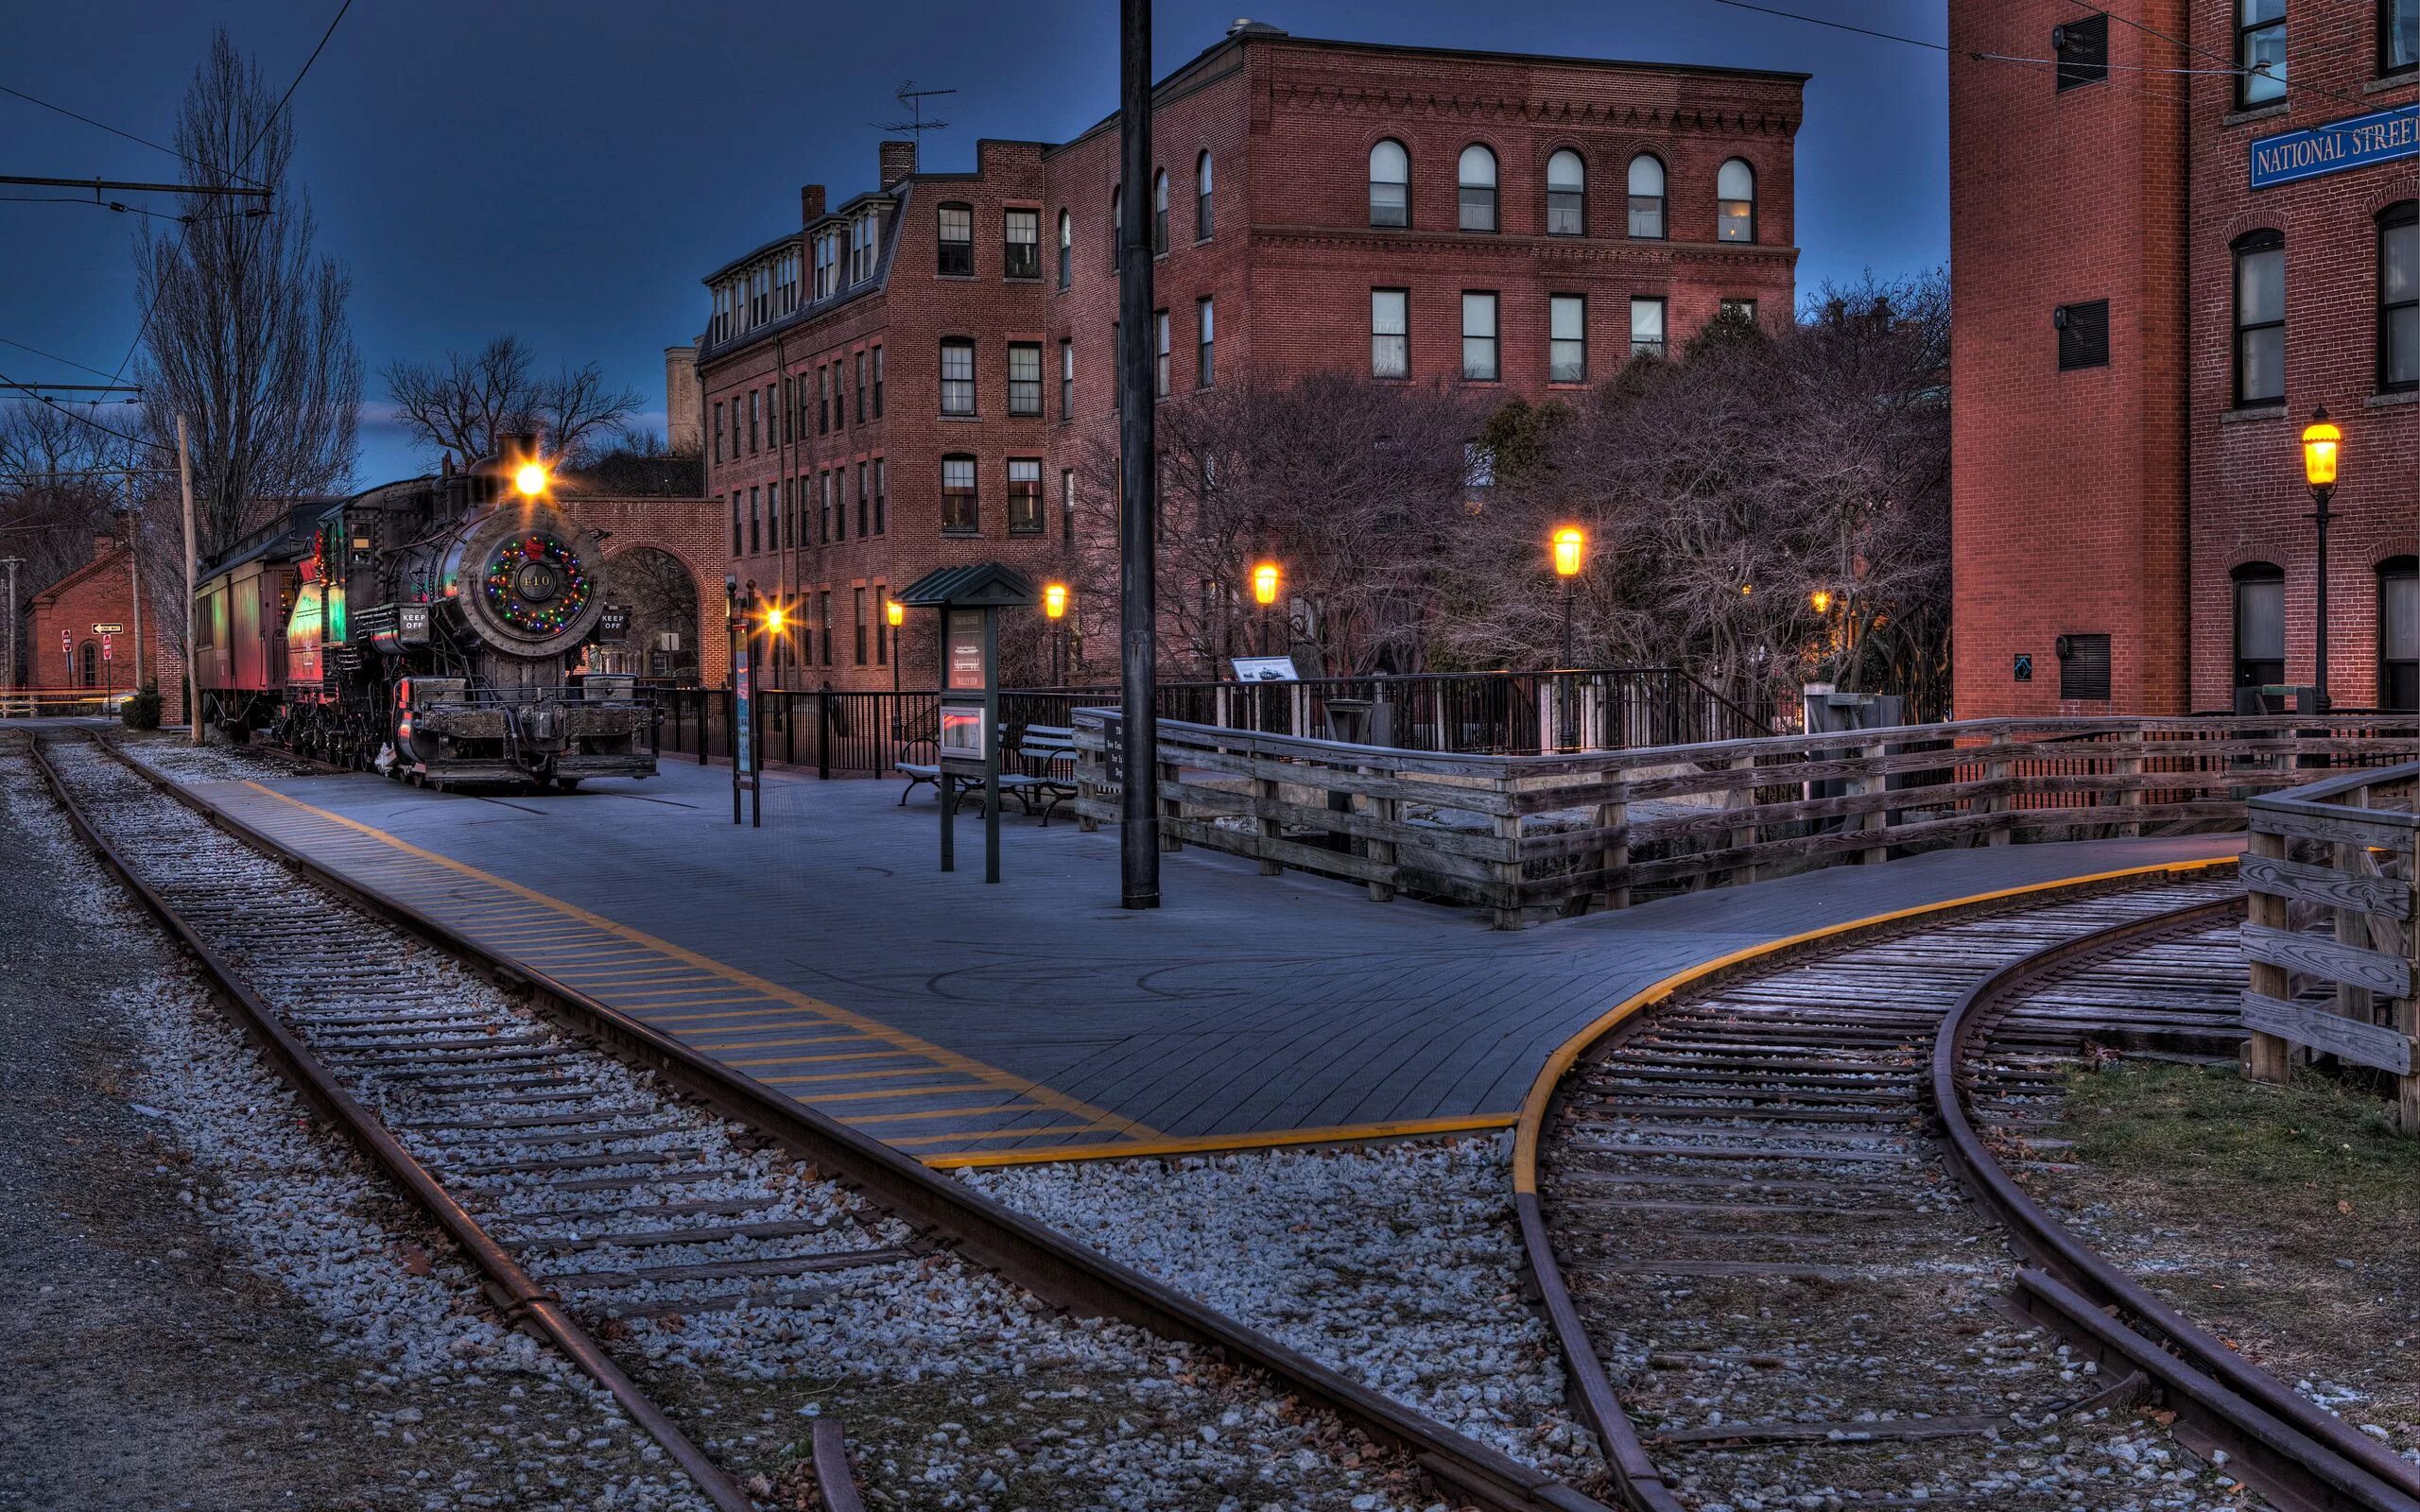 ЖД вокзал Бостона. Железная дорога в городе. Железнодорожные пути в городе. Поезд в городе.